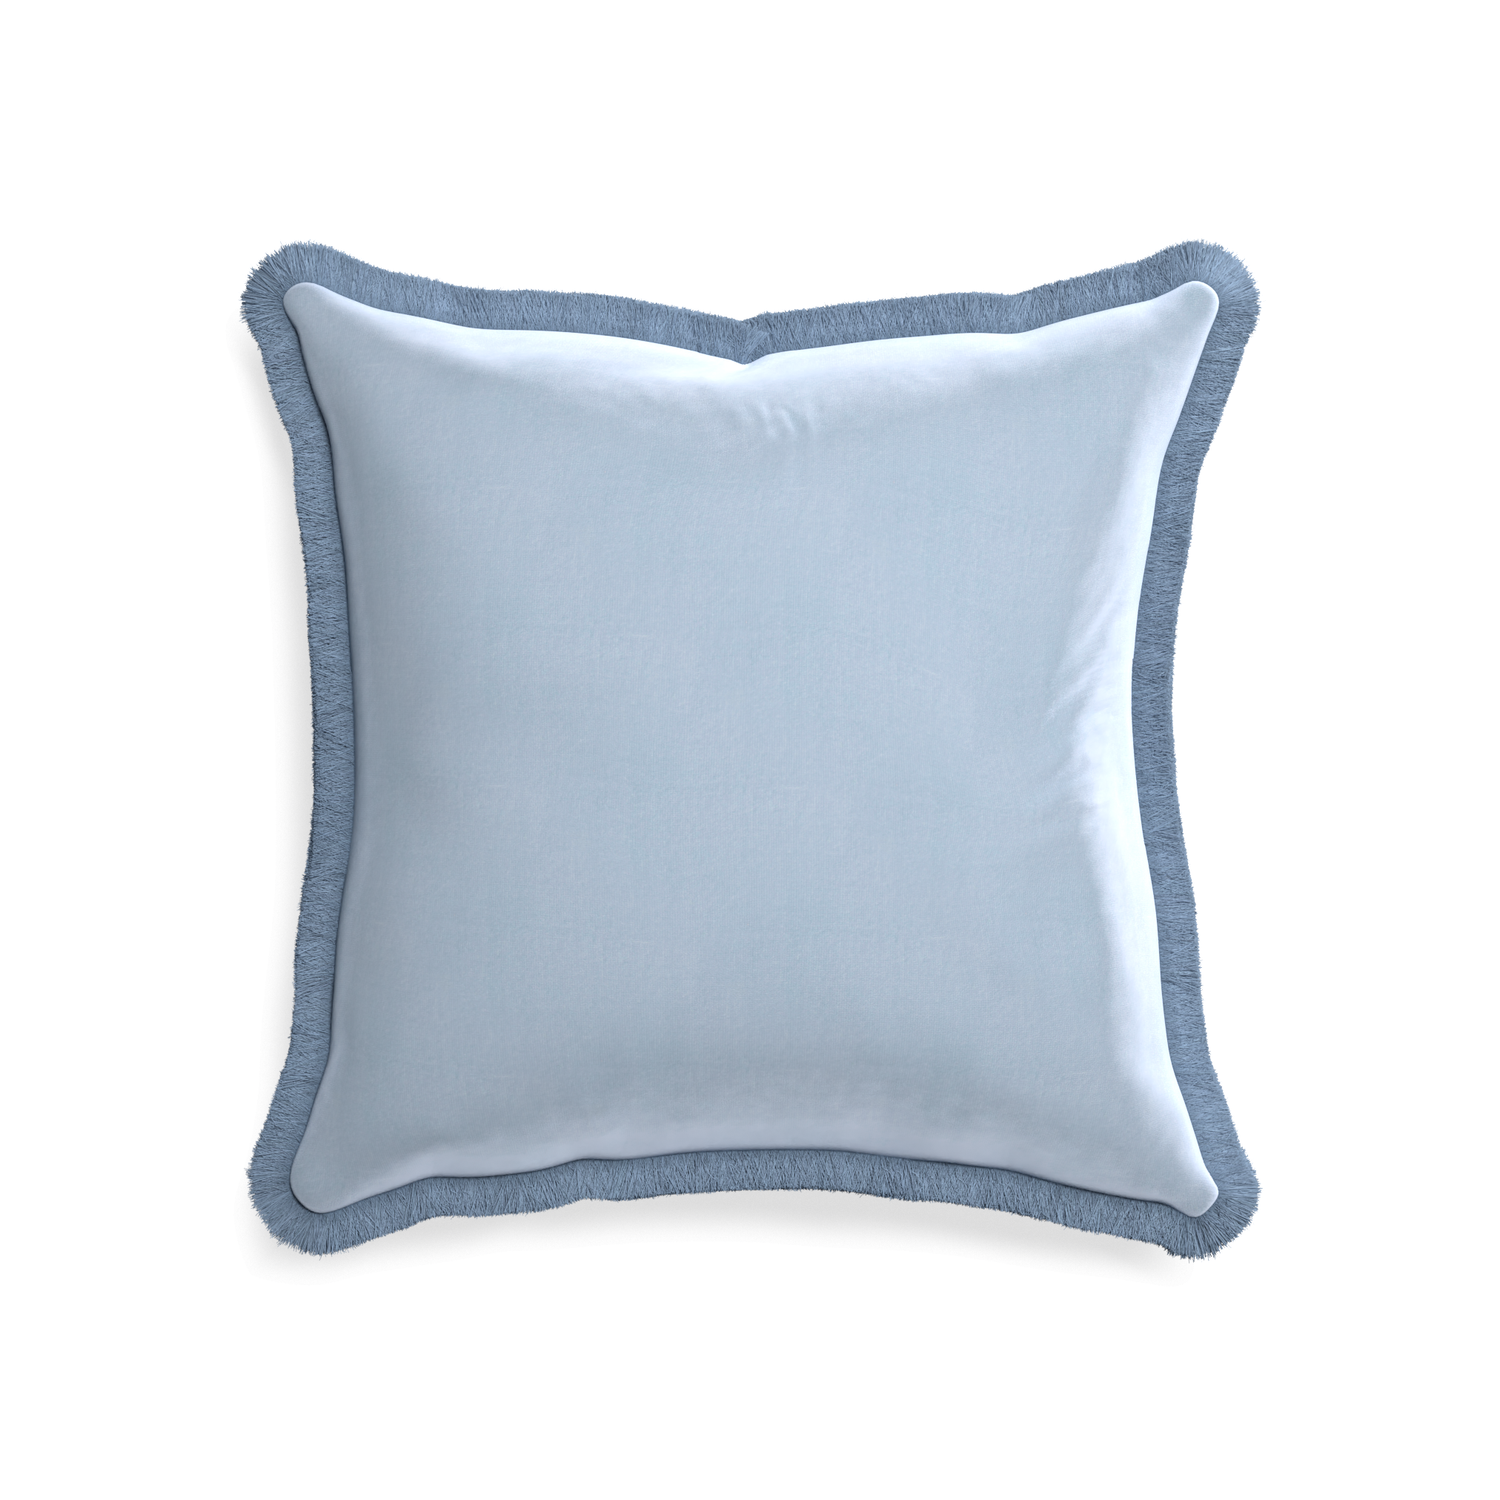 square light blue velvet pillow with sky blue fringe